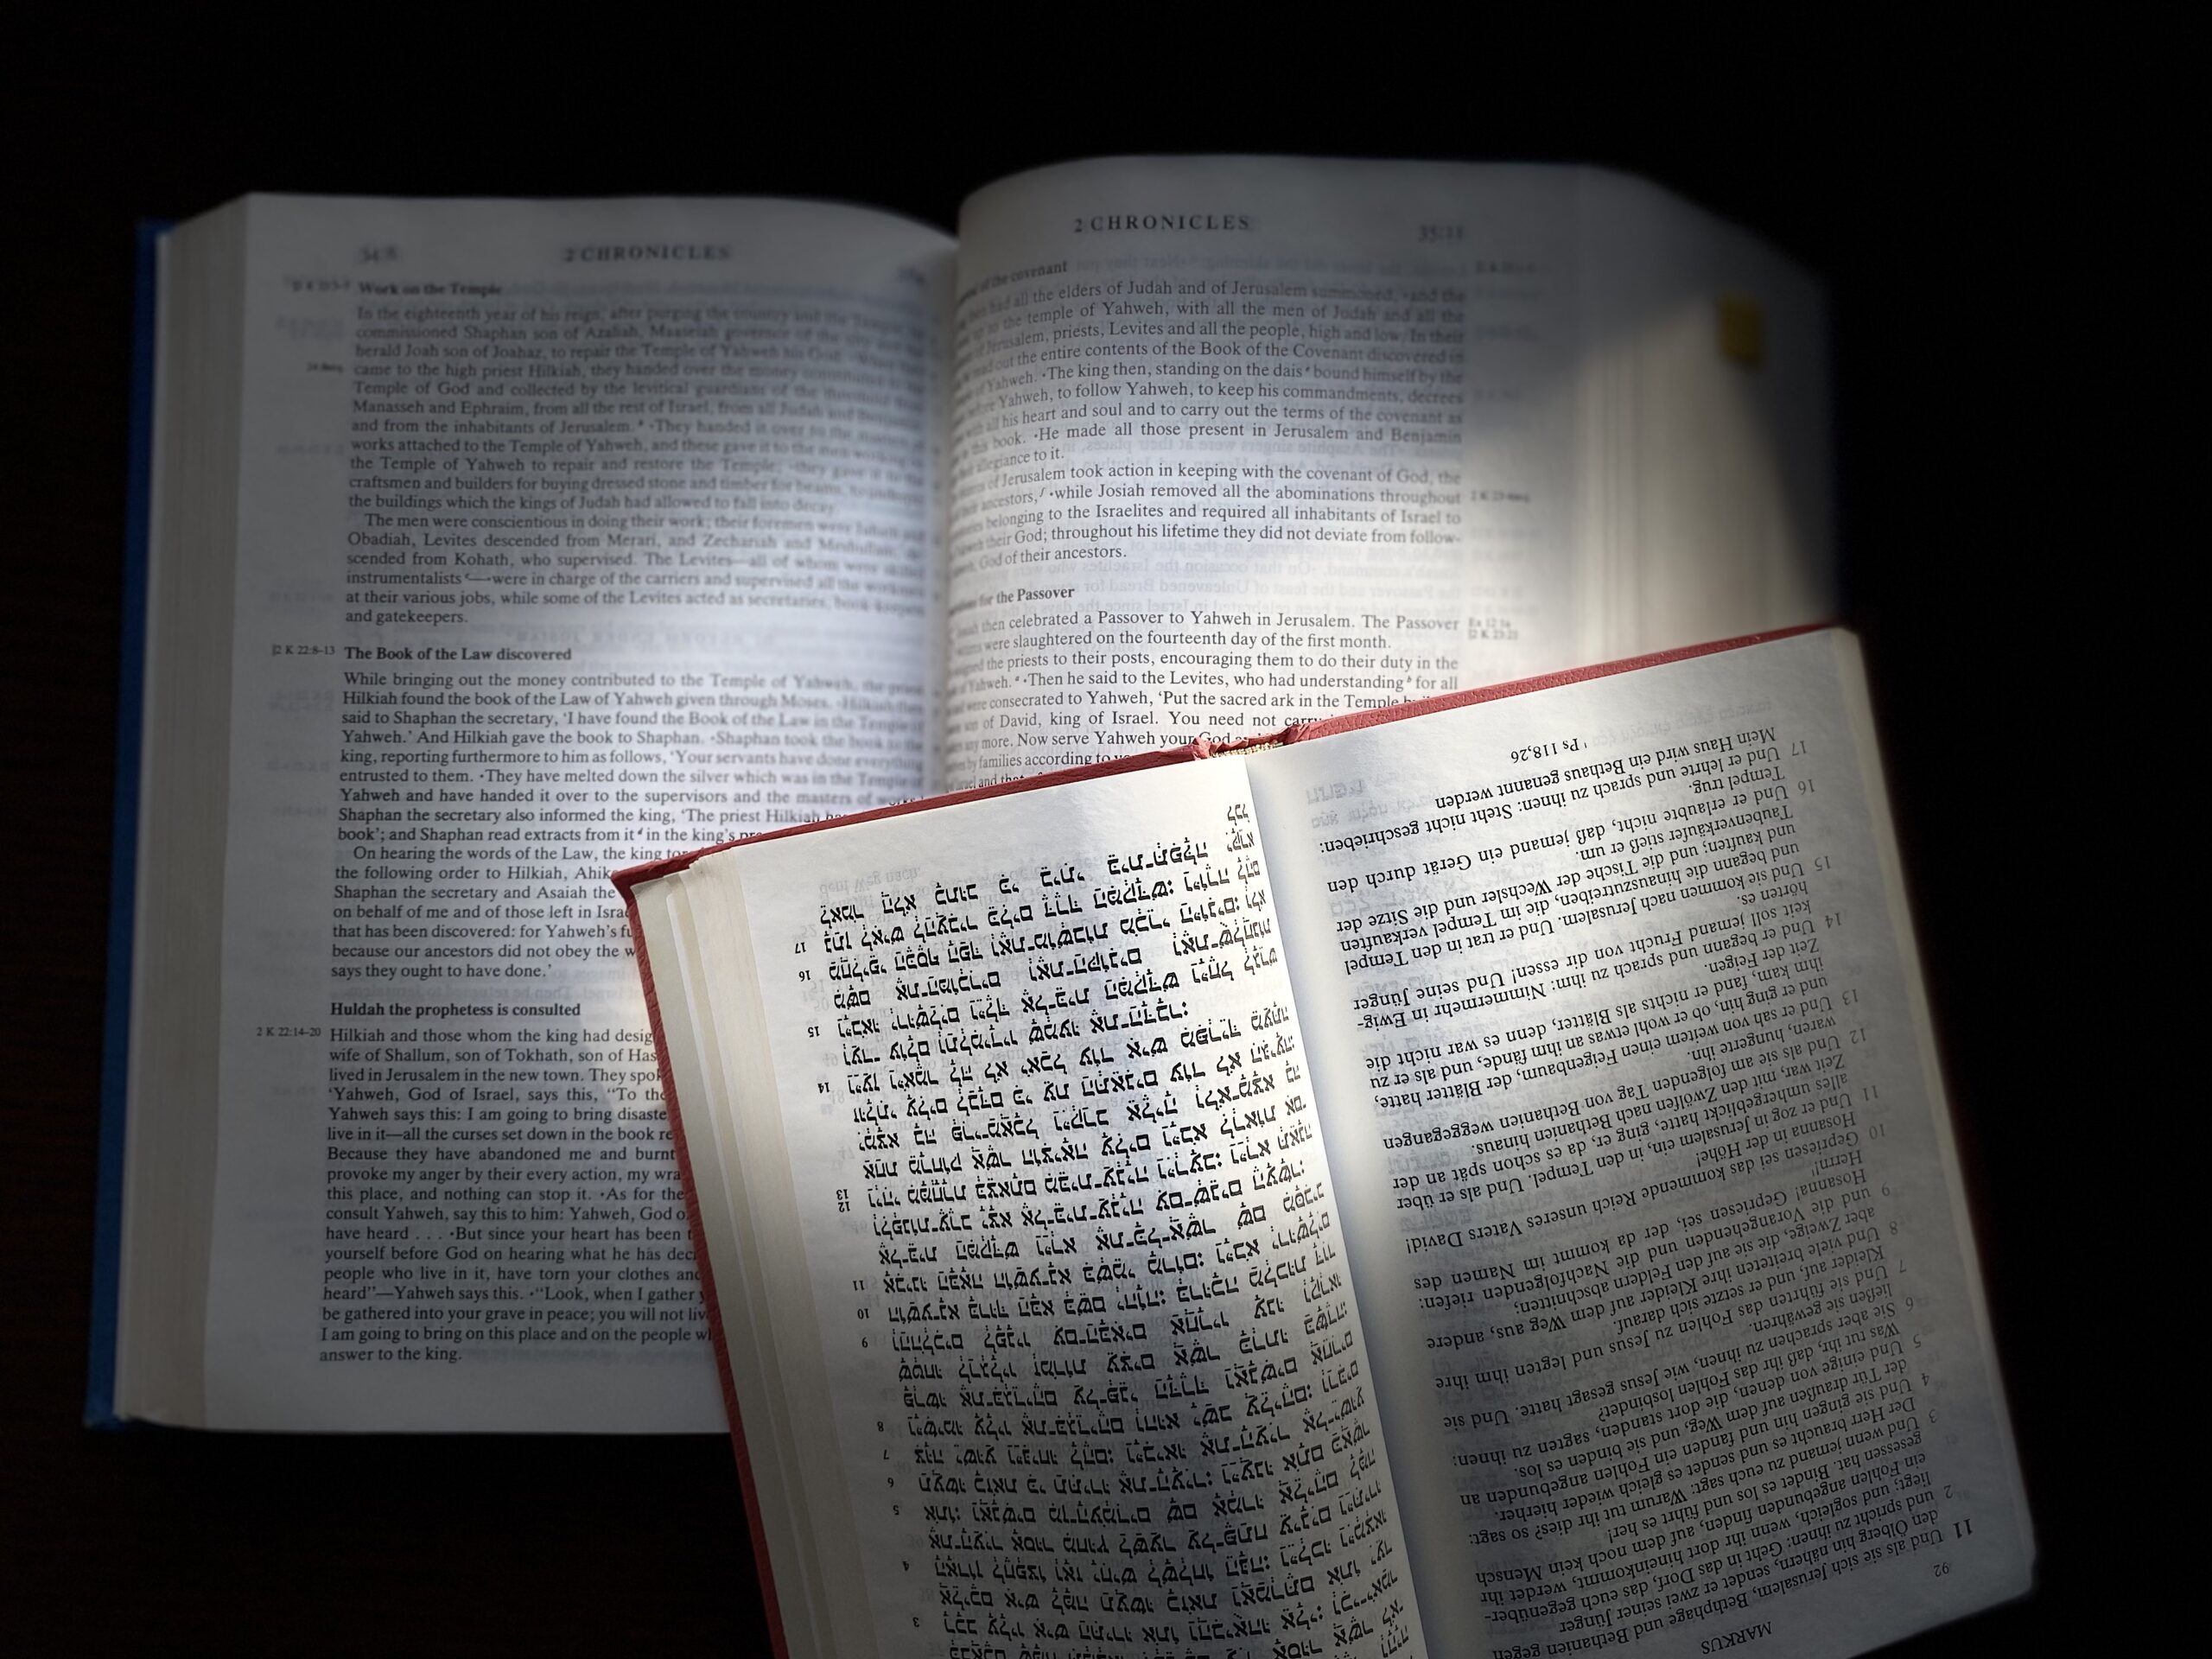 The Bible, Photo credit: Sr. Amata J. Nowaszewska CSFN